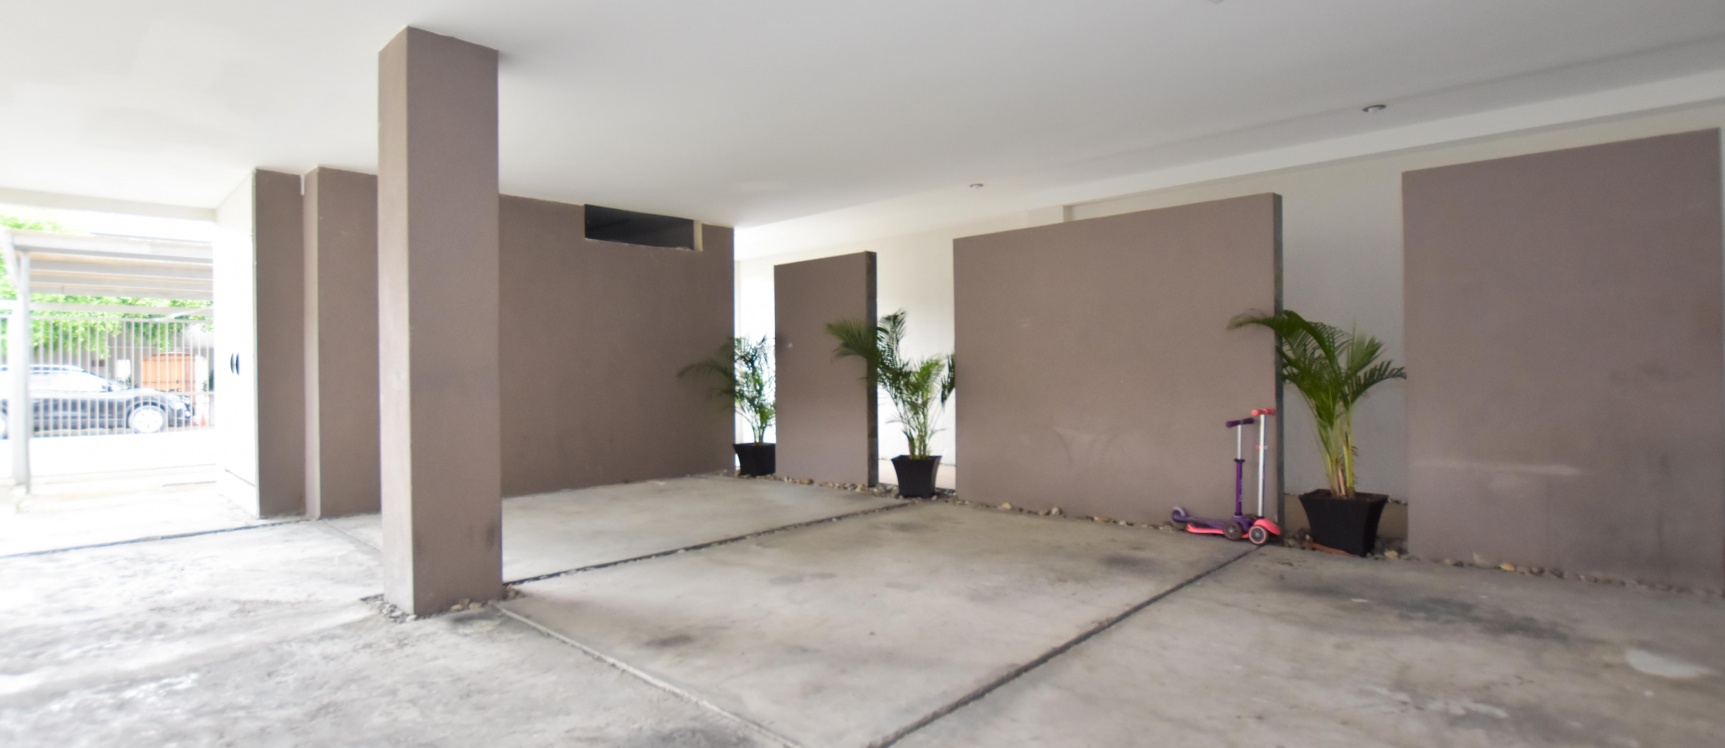 GeoBienes - Departamento en venta - Puerto Azul, Condominio Royal Apart - Plusvalia Guayaquil Casas de venta y alquiler Inmobiliaria Ecuador